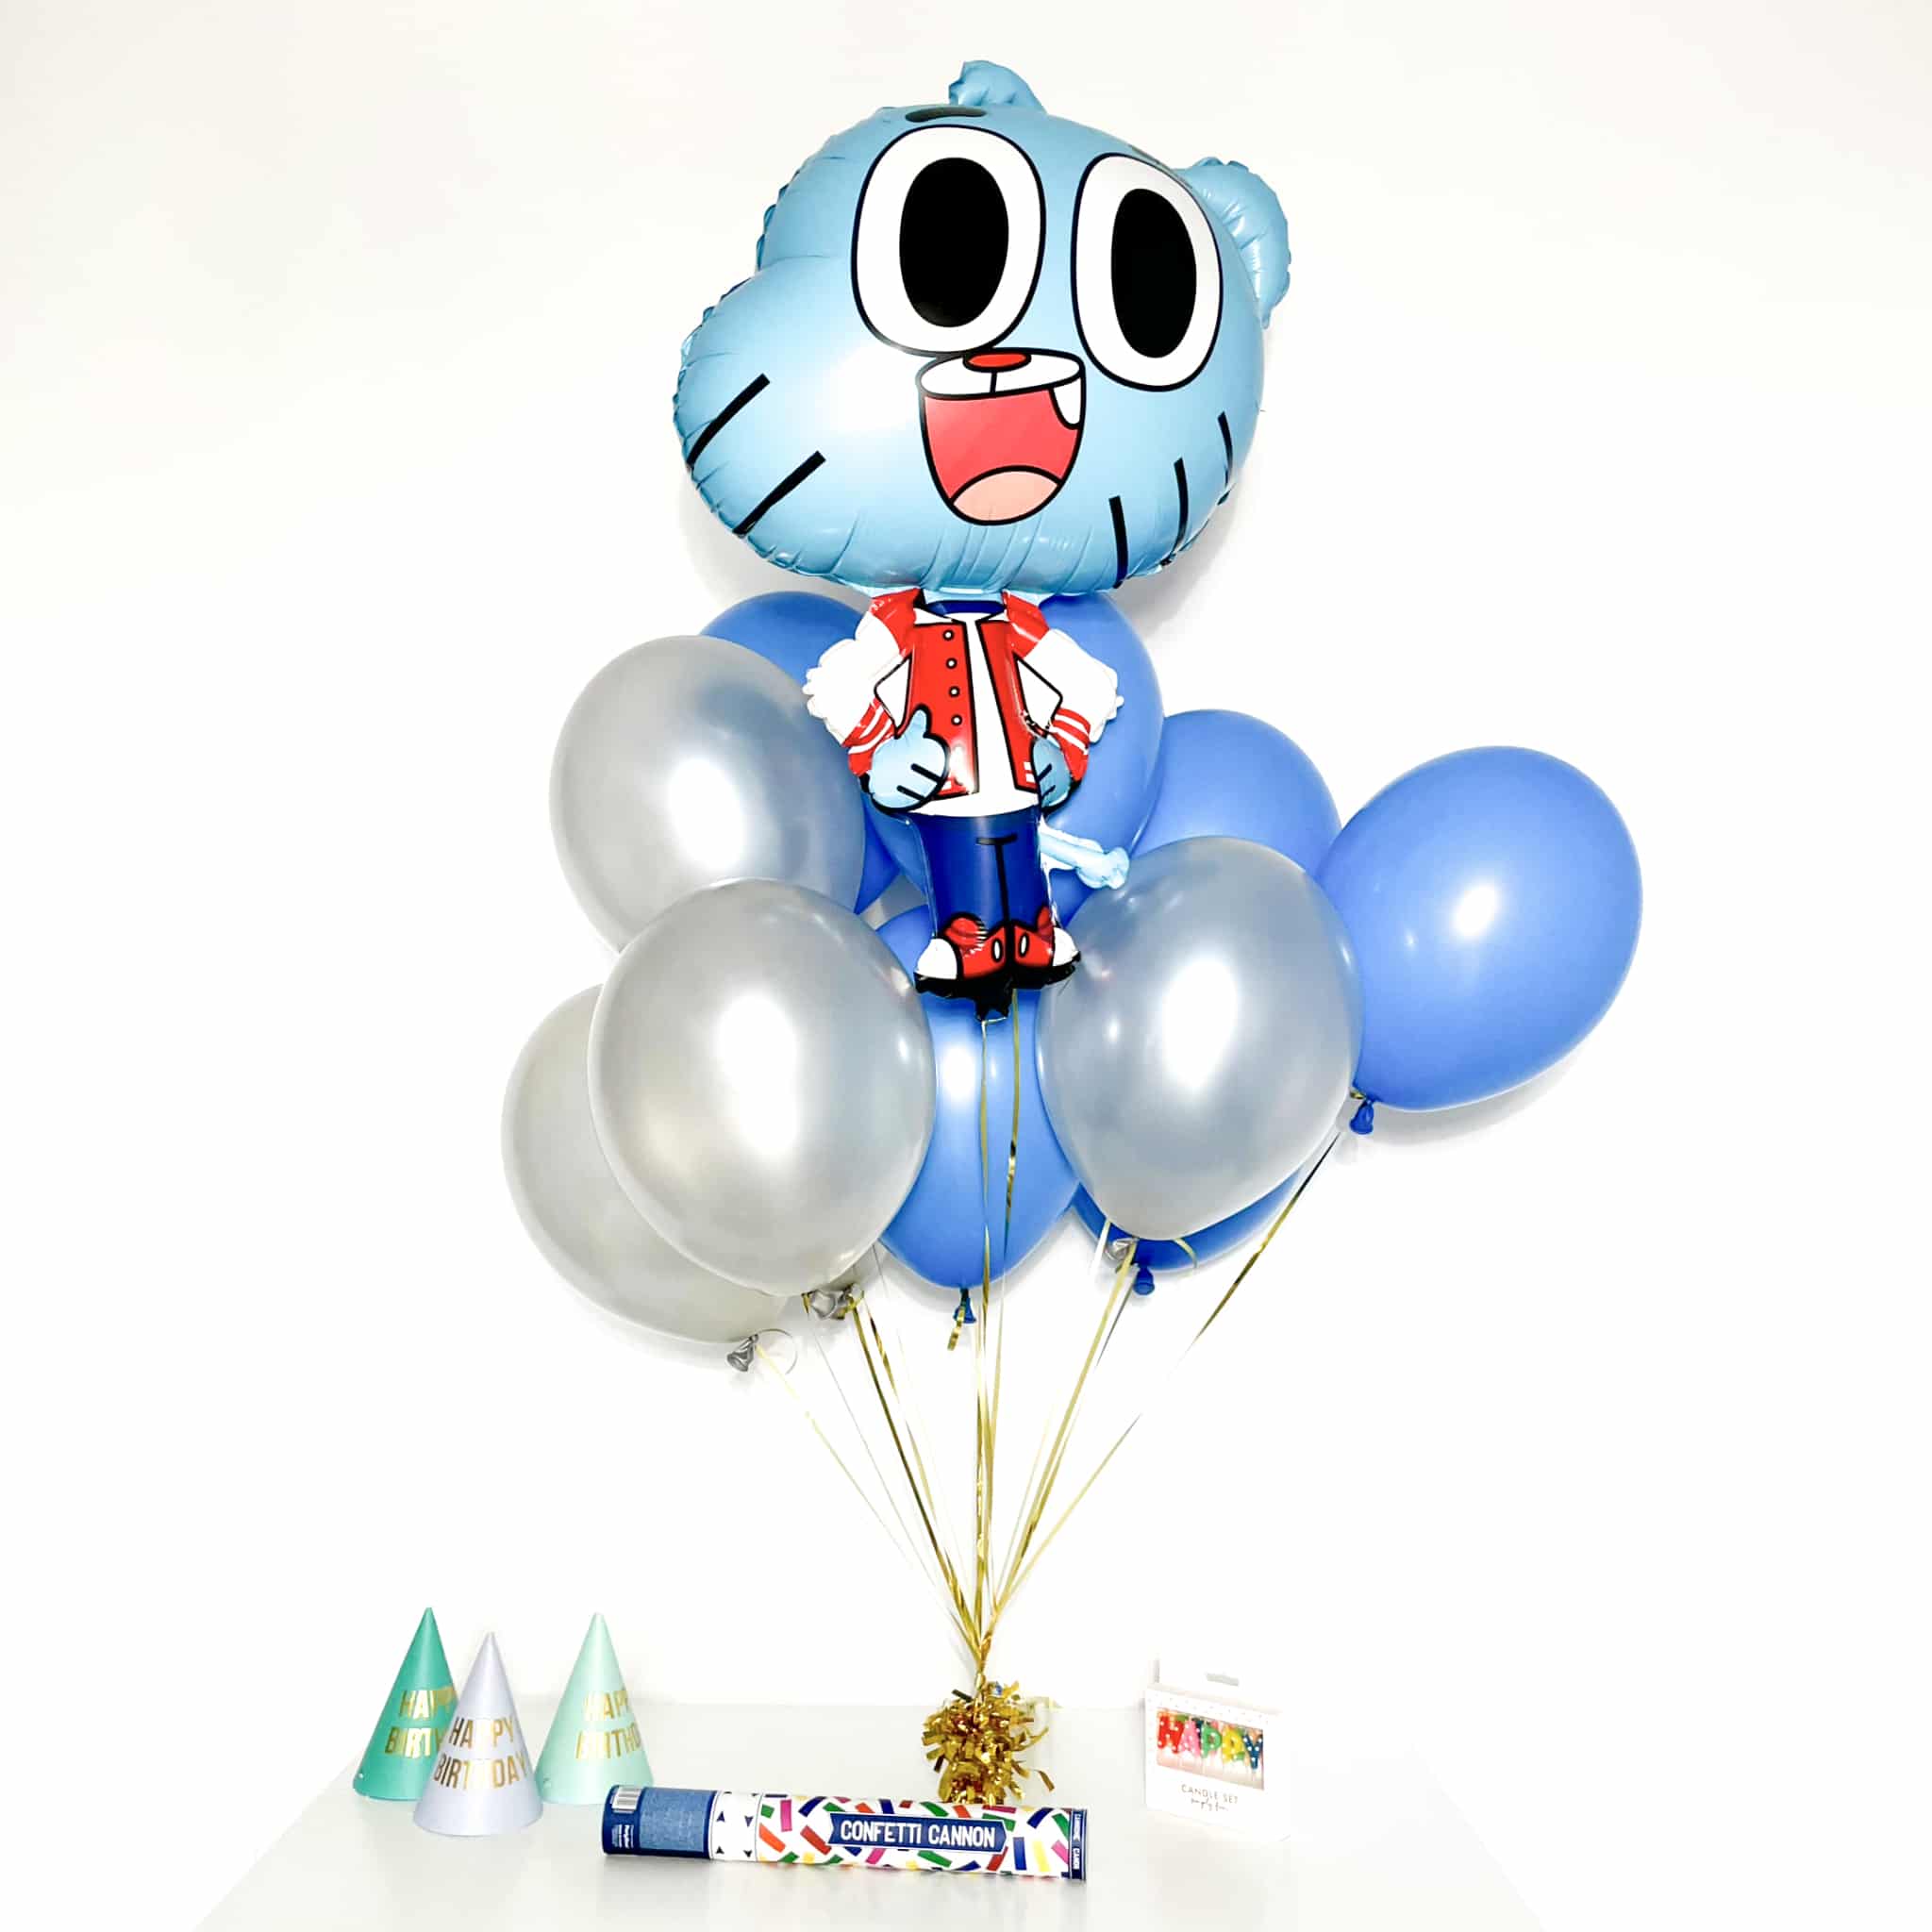 Bukiet balonowy: HAPPY GUMBALL 2, napełniony helem Balony dla Dziecka Szalony.pl - Sklep imprezowy